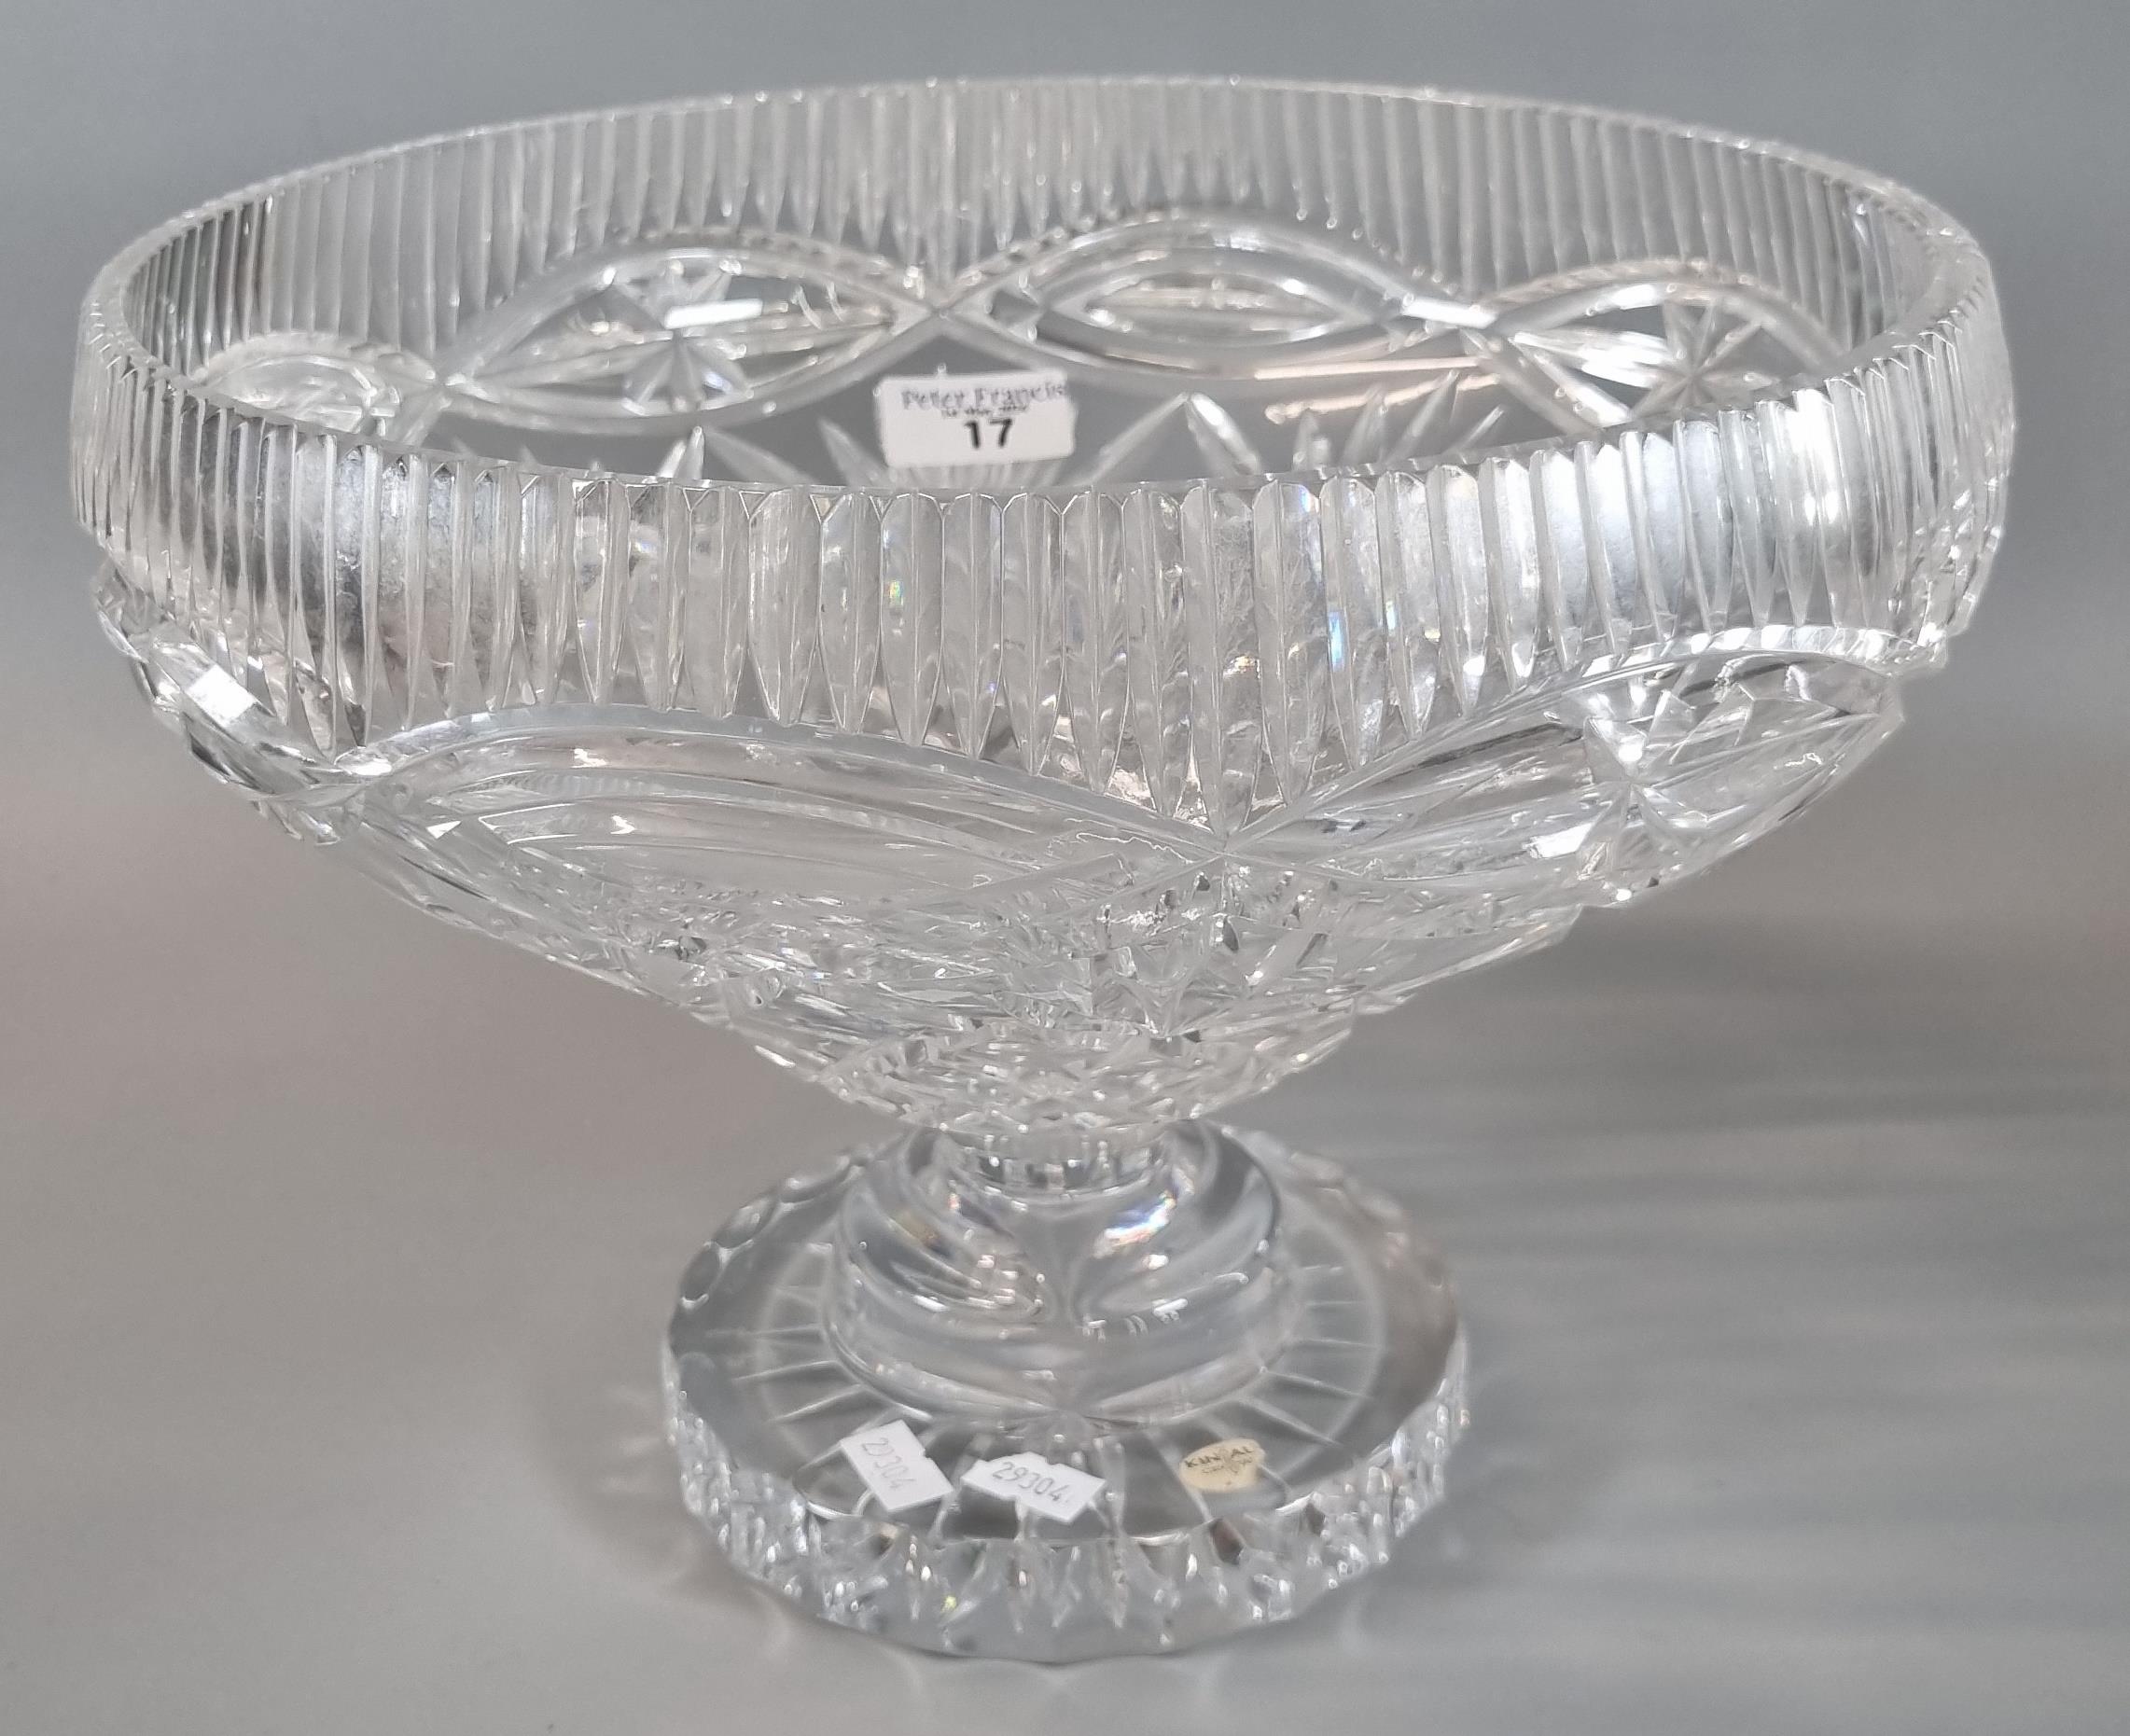 Kinsale crystal centre/punch bowl. 28cm diameter approx. (B.P. 21% + VAT)